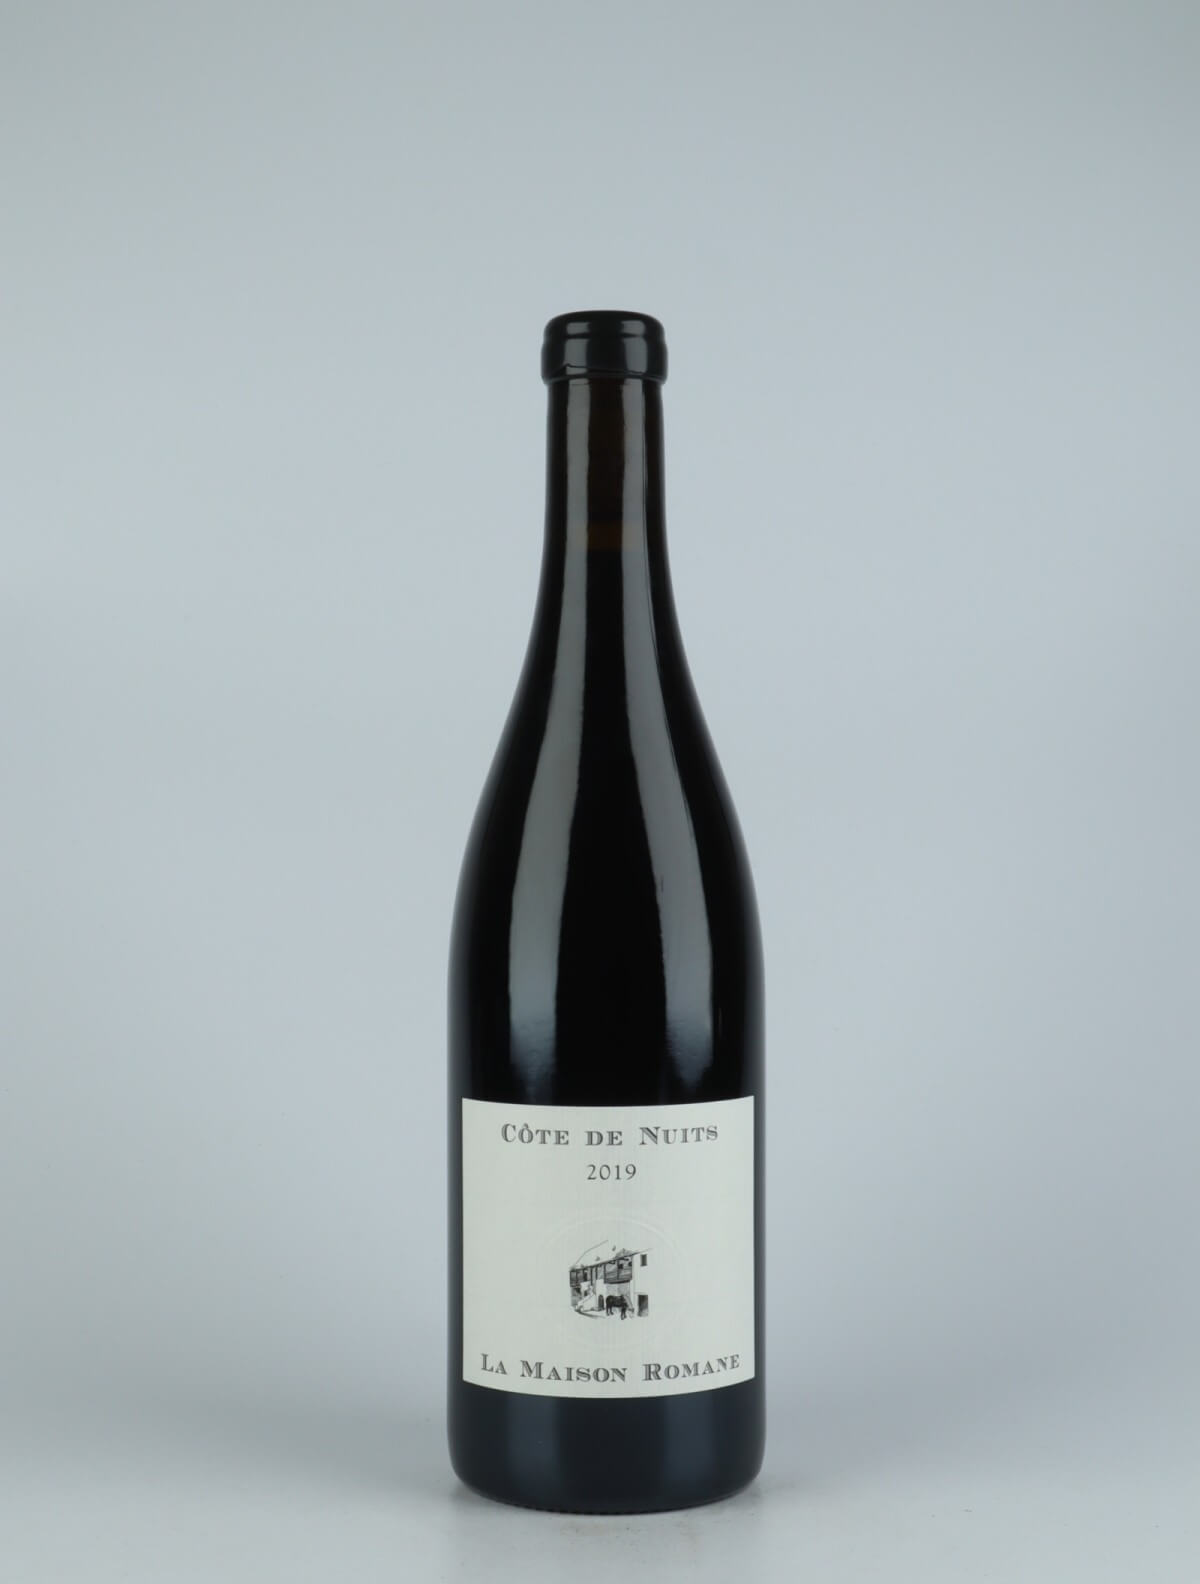 A bottle 2019 Côtes de Nuits Villages Red wine from La Maison Romane, Burgundy in France